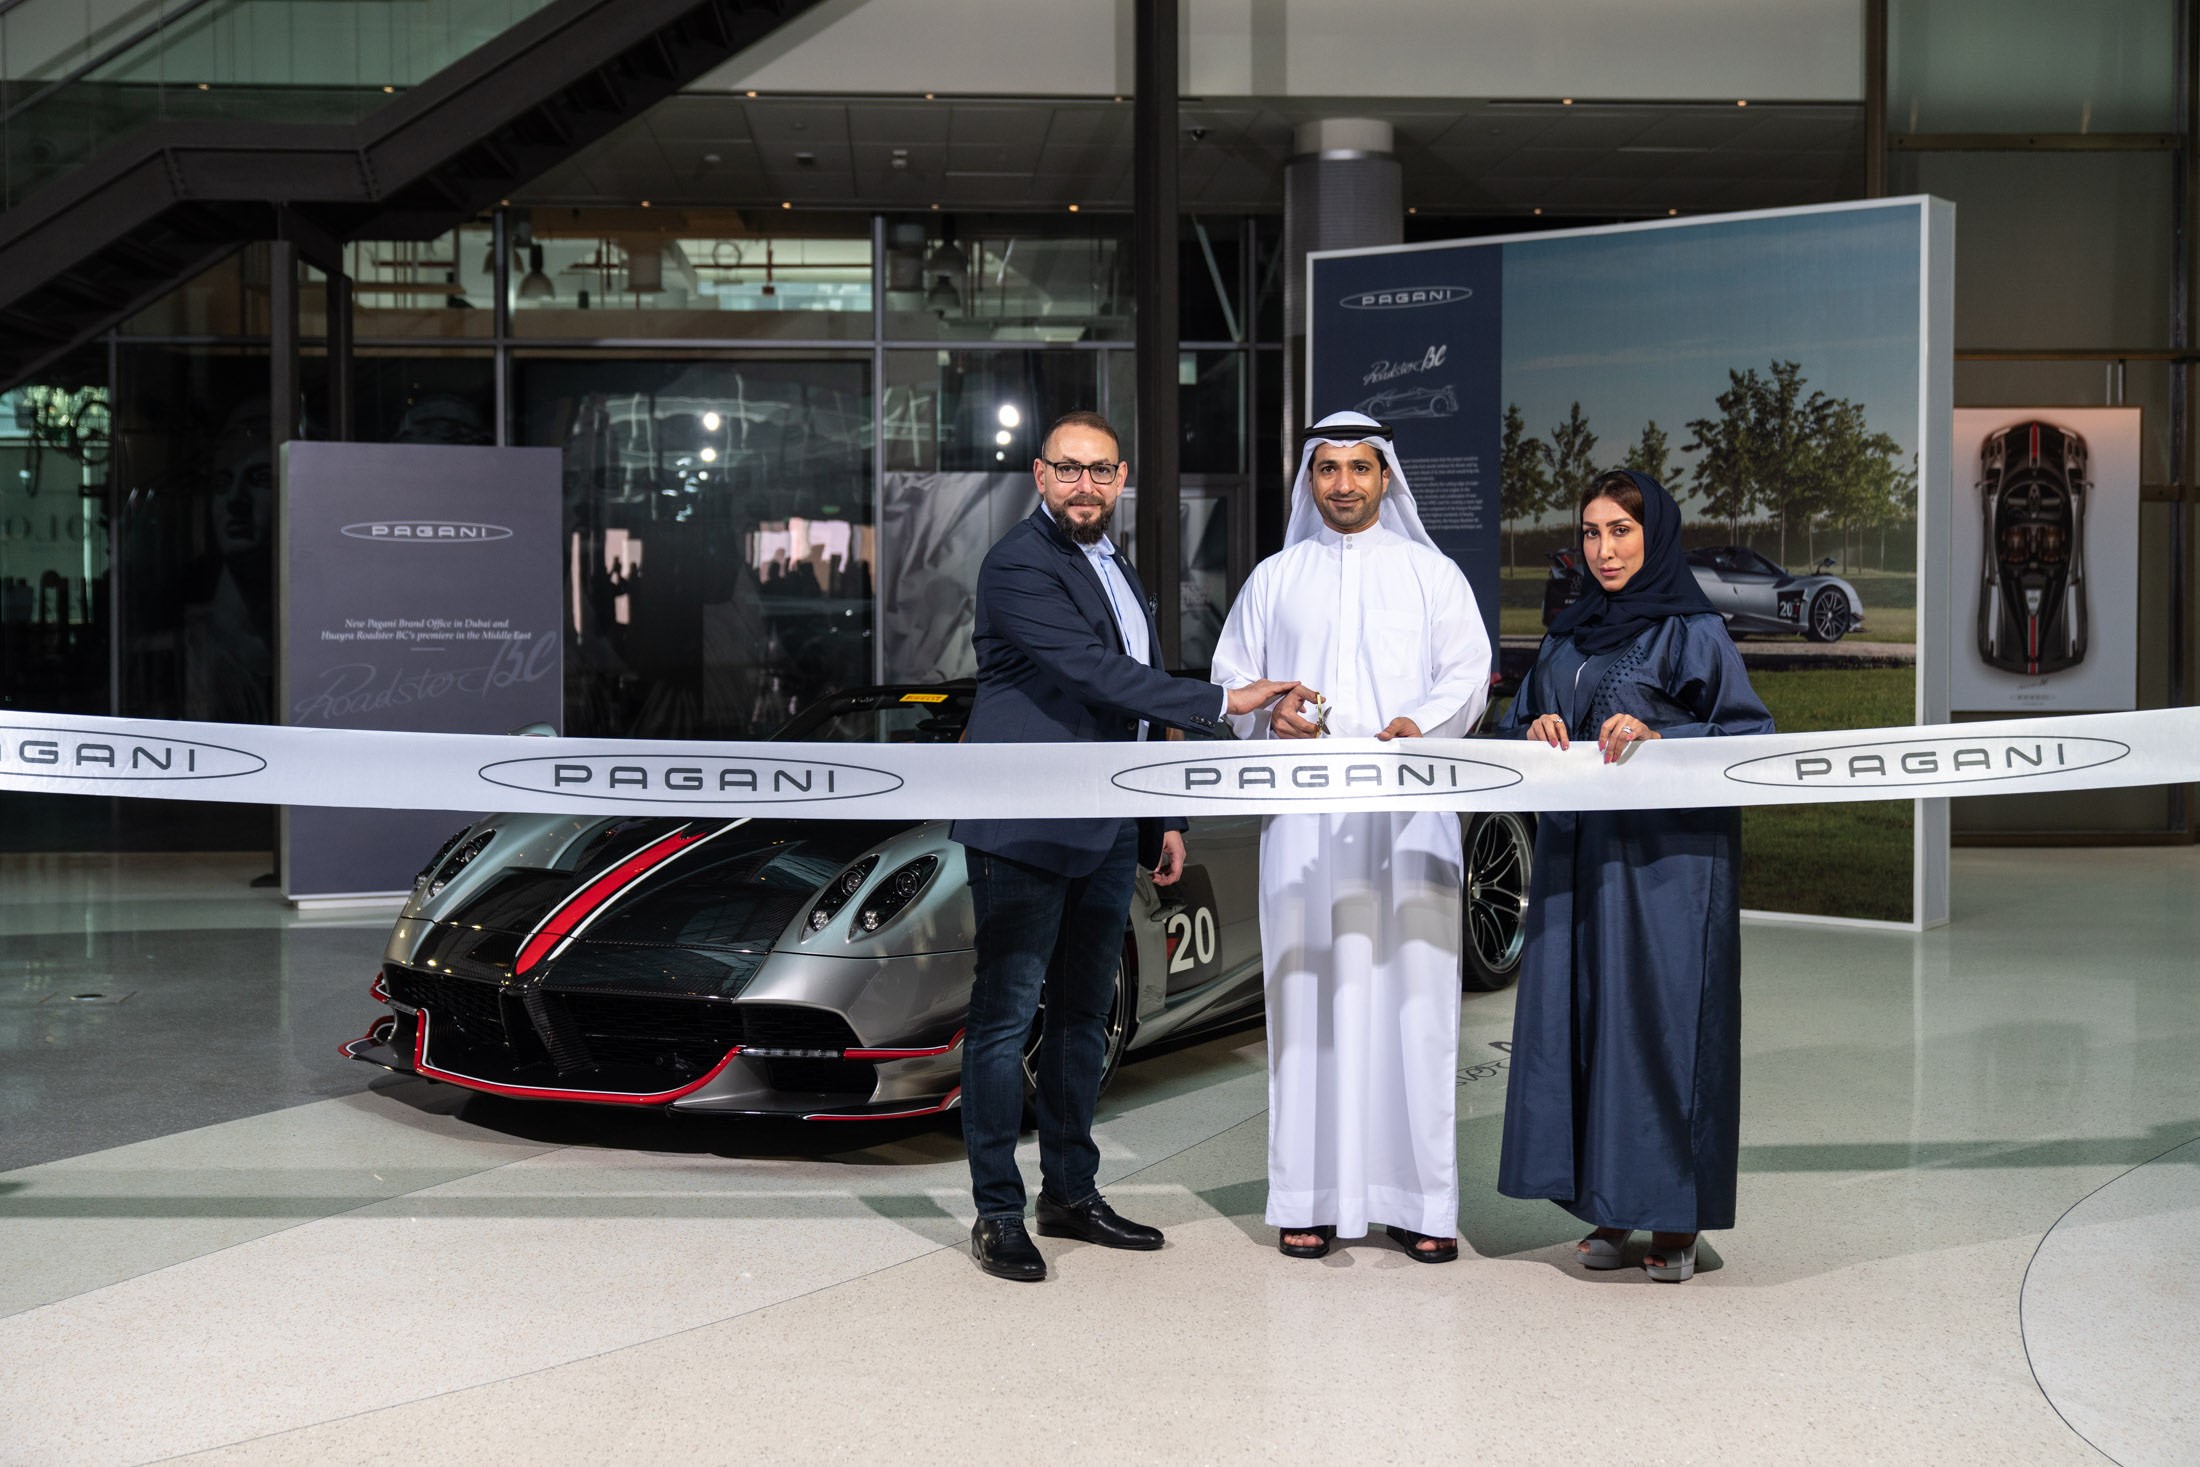 افتتاح مكتب باغاني في دبي والكشف عن أول هويرا رودستر BC في المنطقة